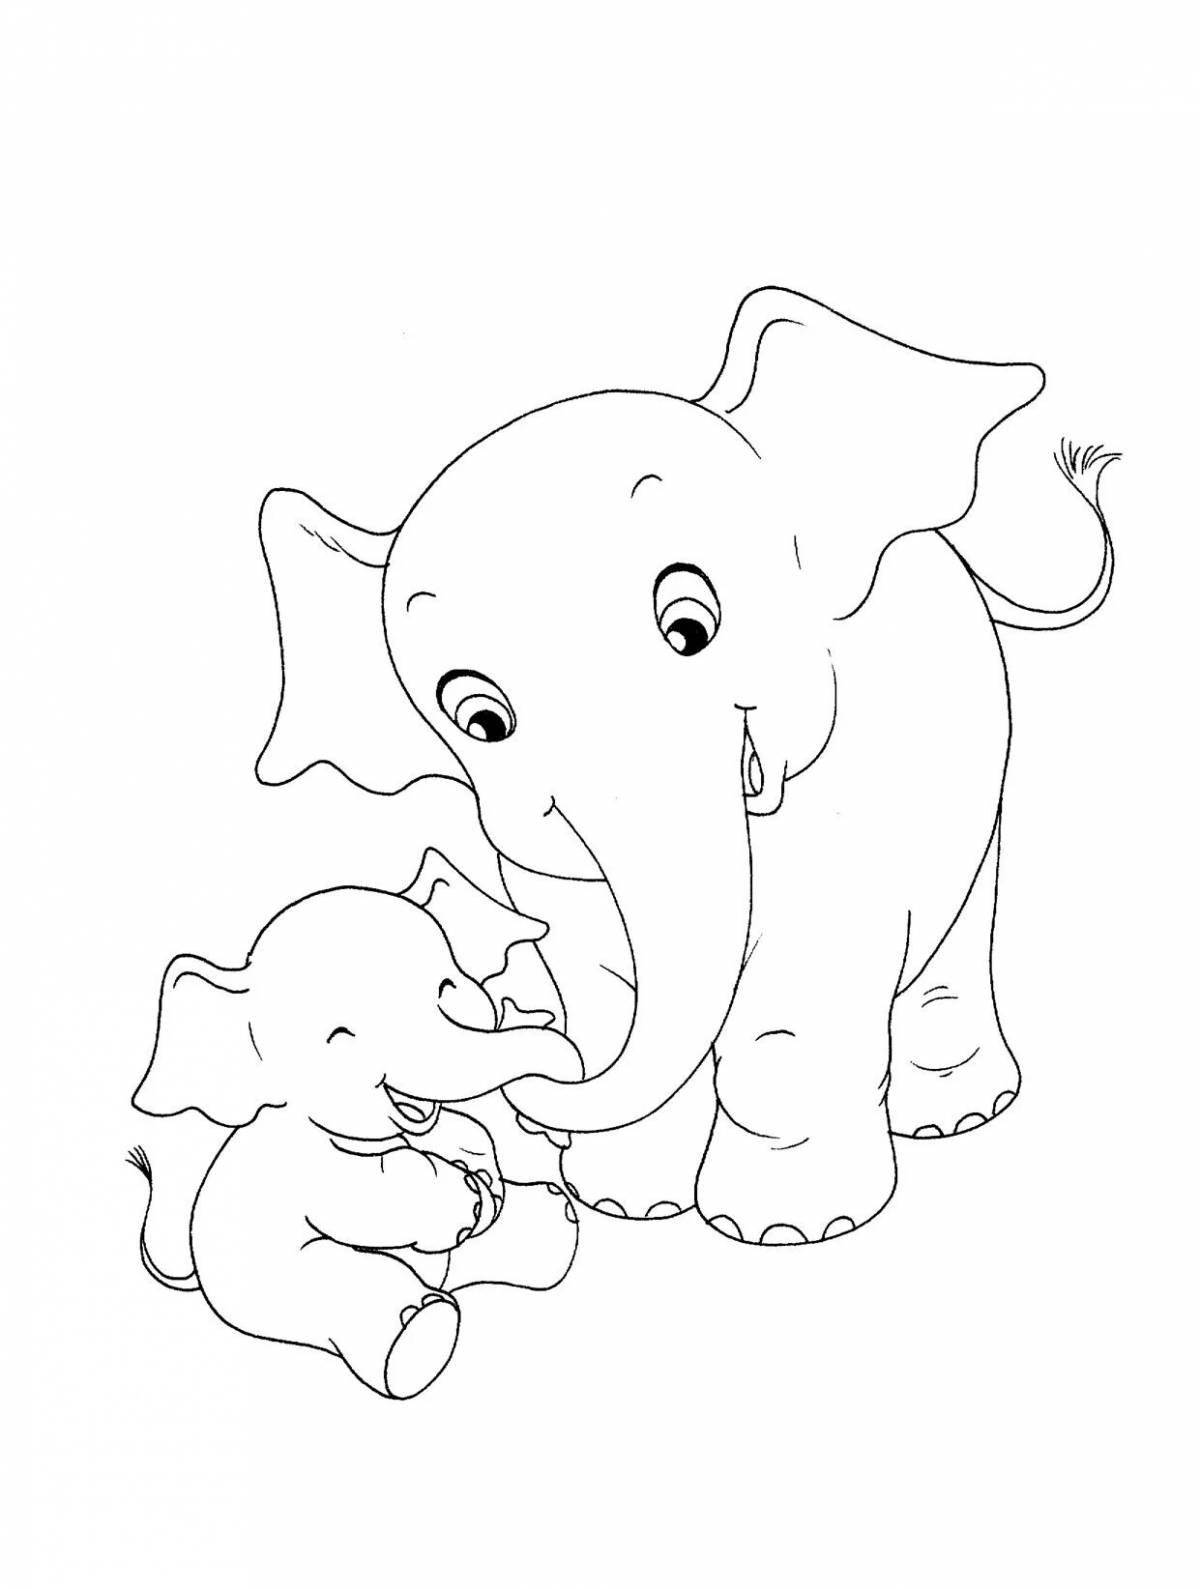 Великолепная раскраска слонов для детей